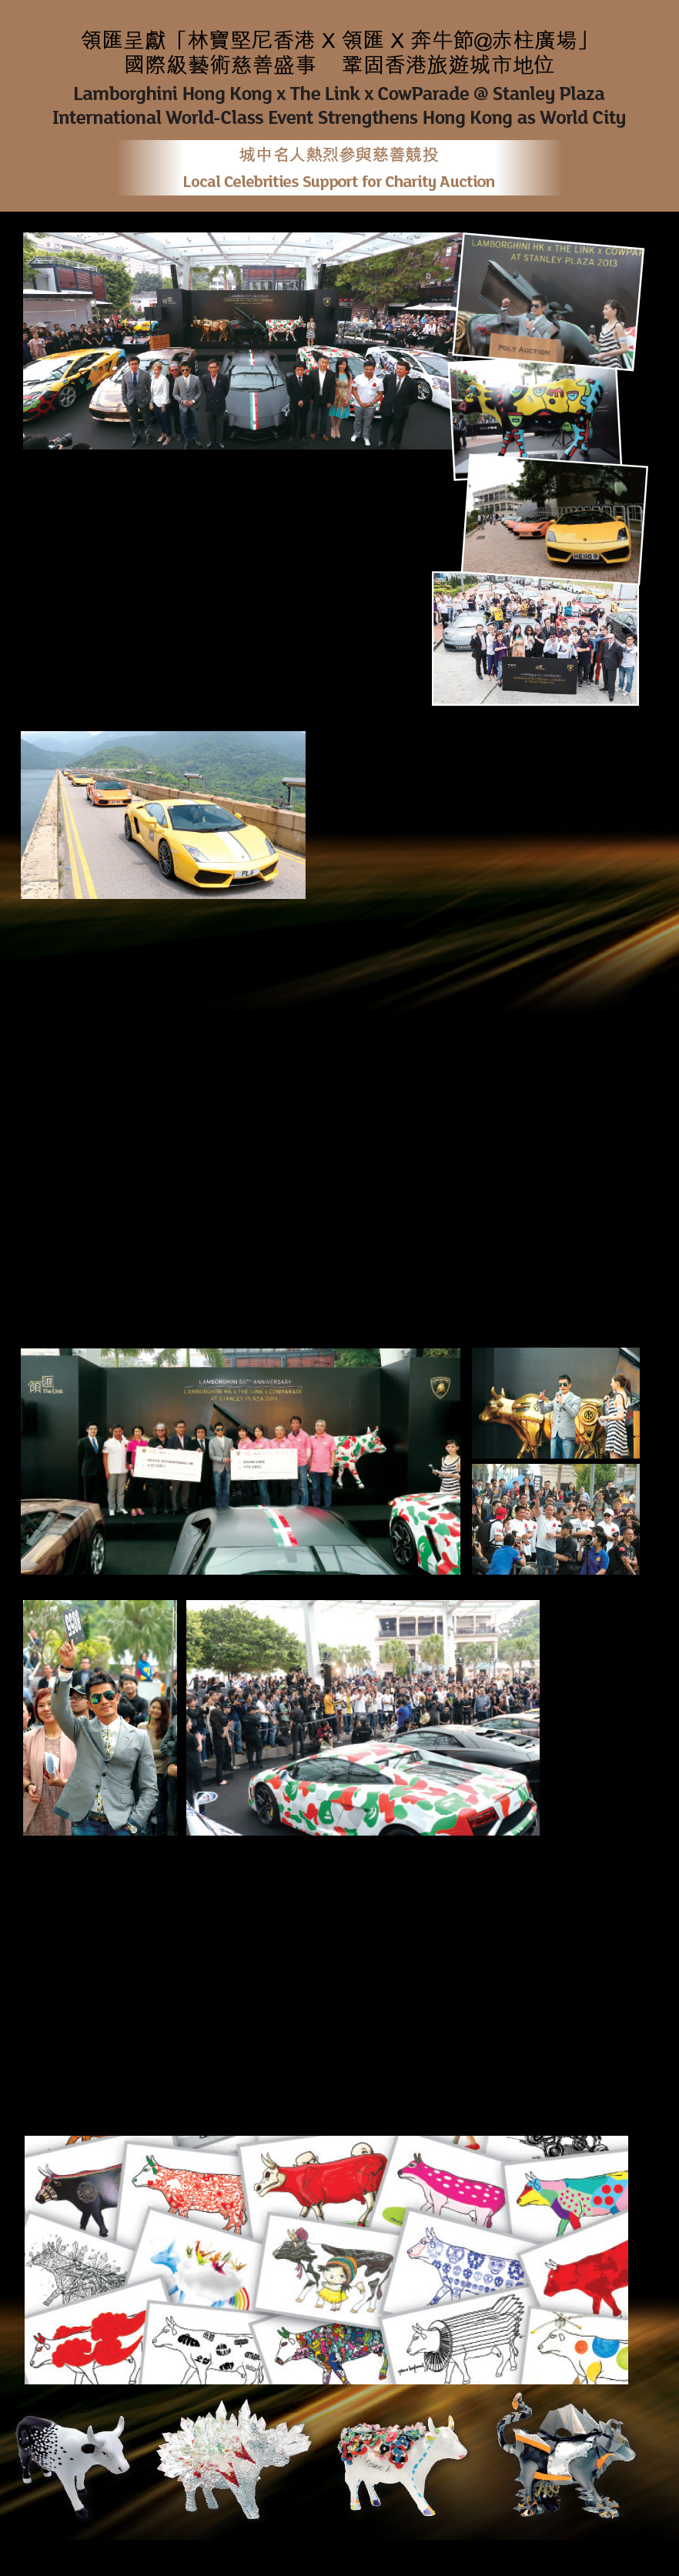 領匯呈獻「林寶堅尼香港X領匯X奔牛節赤柱廣場」
國際級藝術慈善盛事  鞏固香港旅遊城市地位
Lamborghini Hong Kong x The Link x CowParade @ Stanley Plaza
International World – Class Event Strengthens Hong Kong as World City
